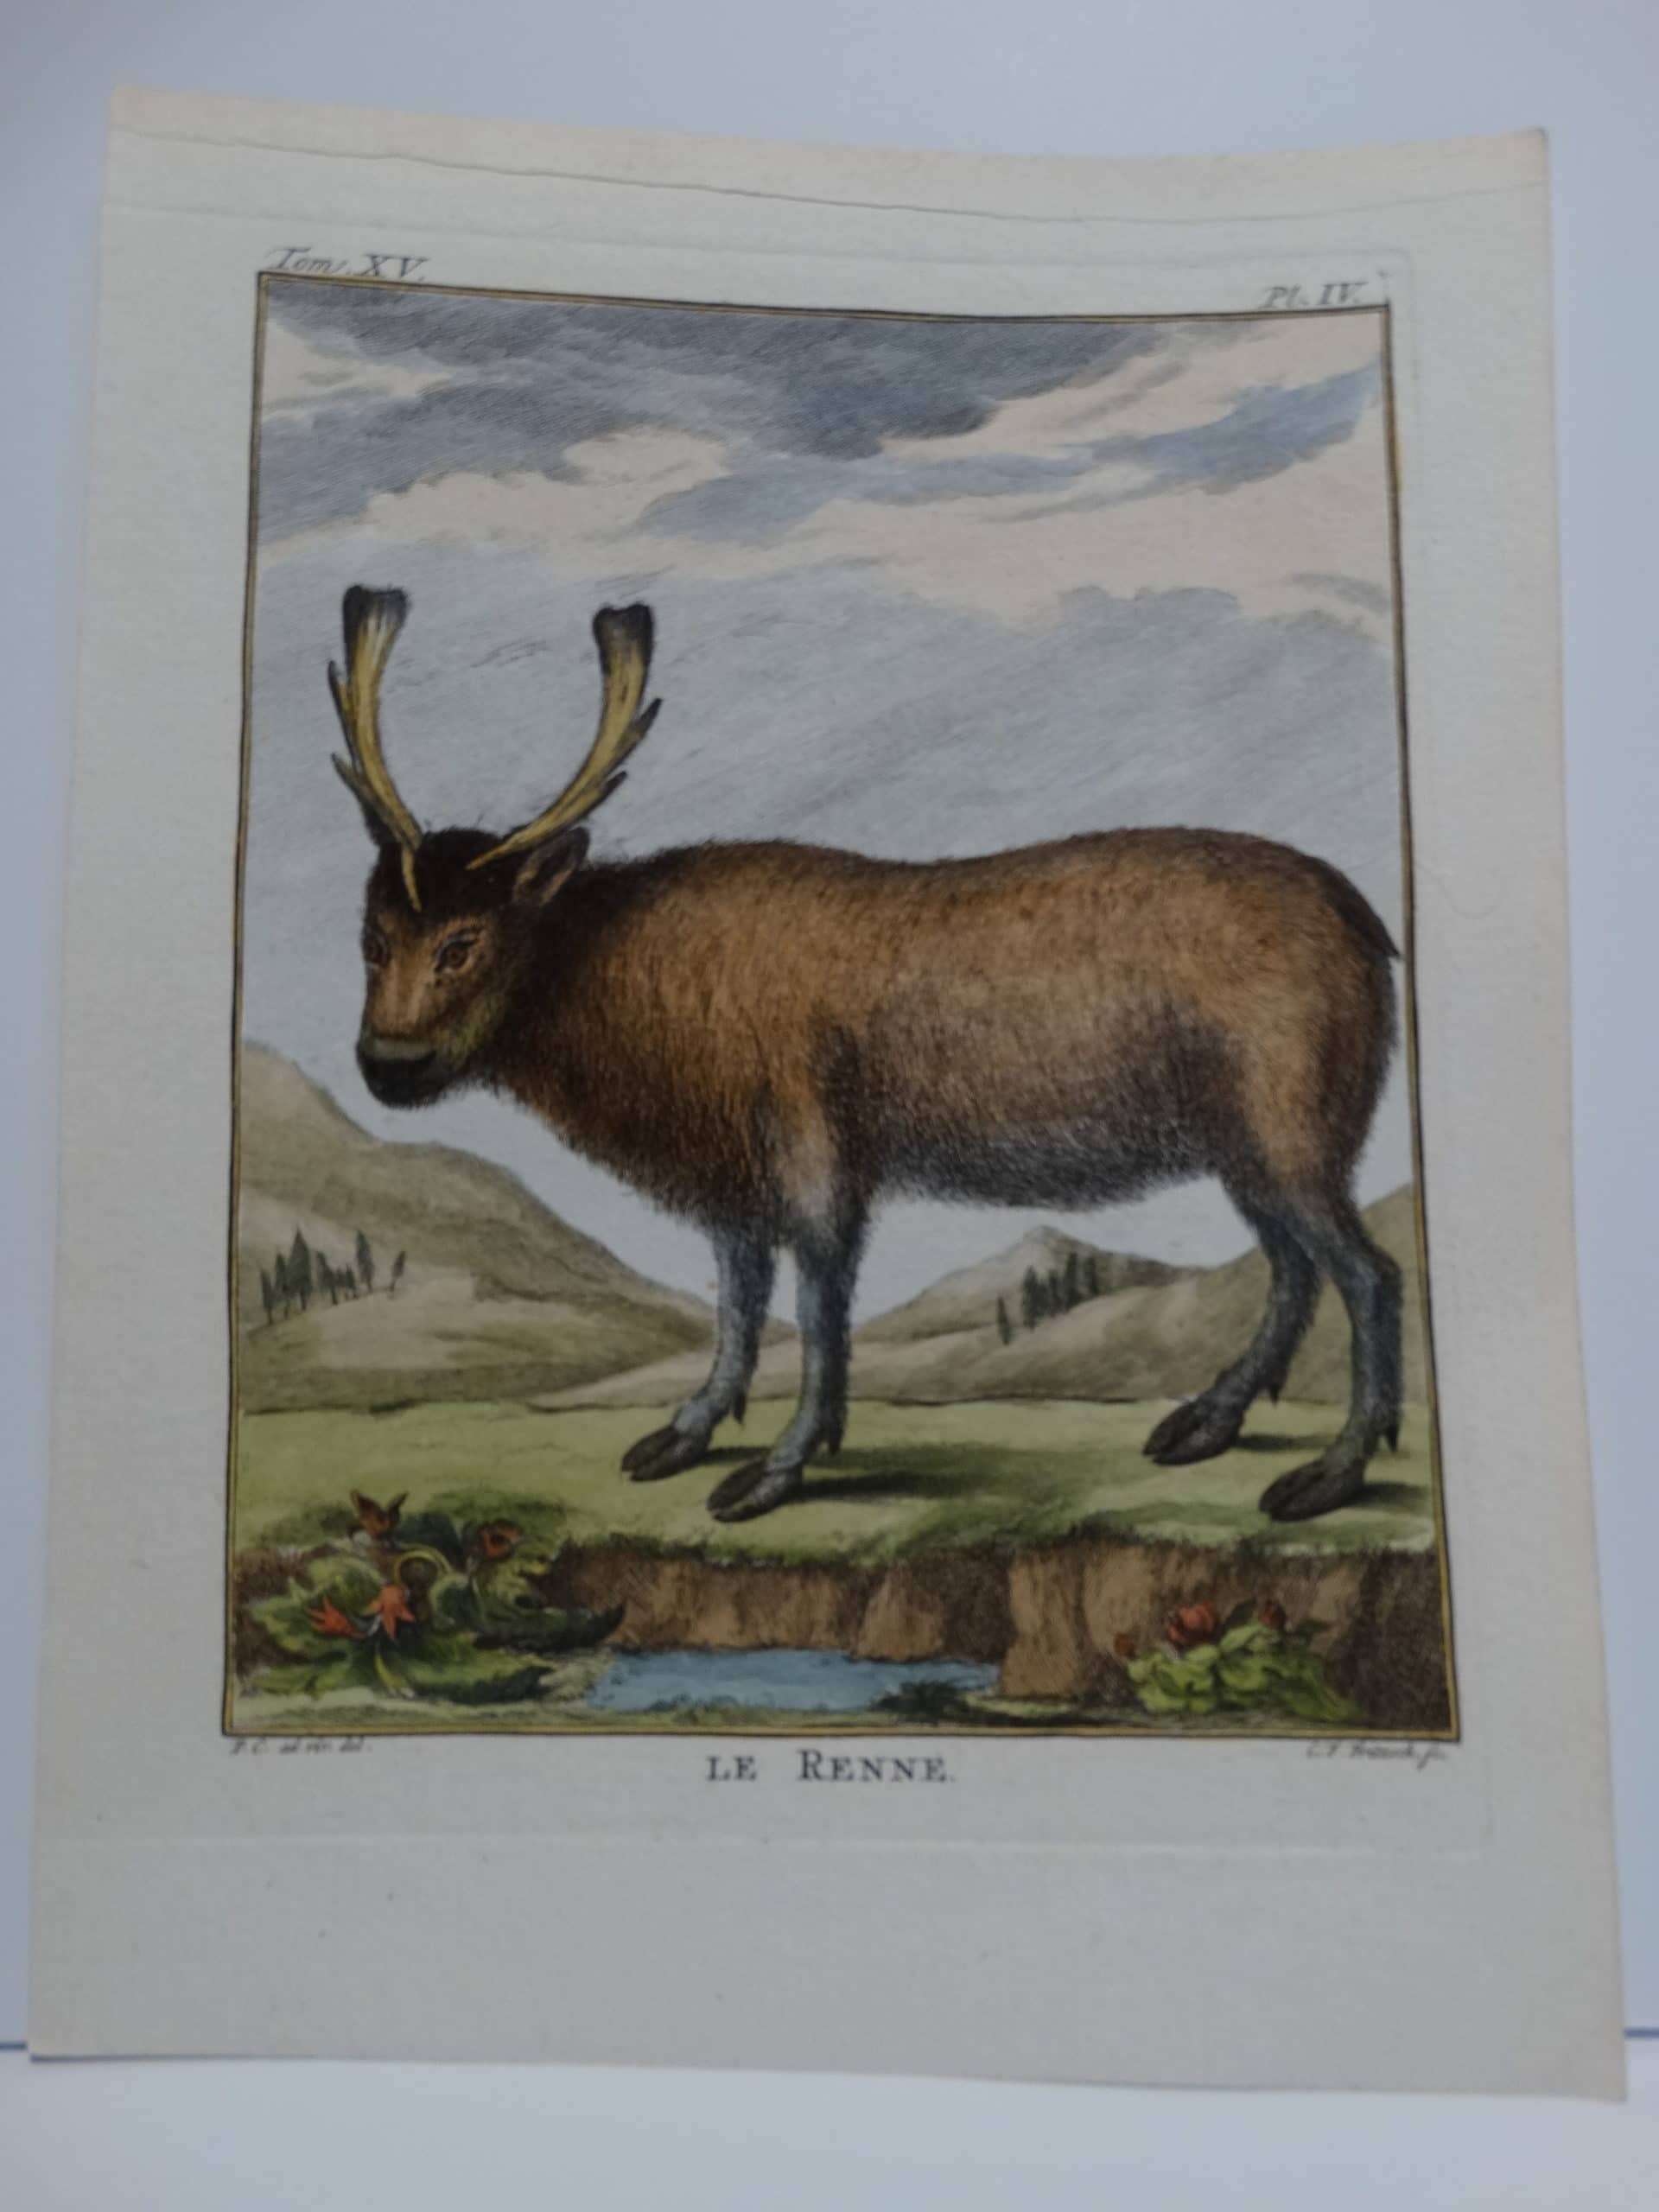 Coompte de Buffon, 1st edition reindeer engravings, in watercolors.